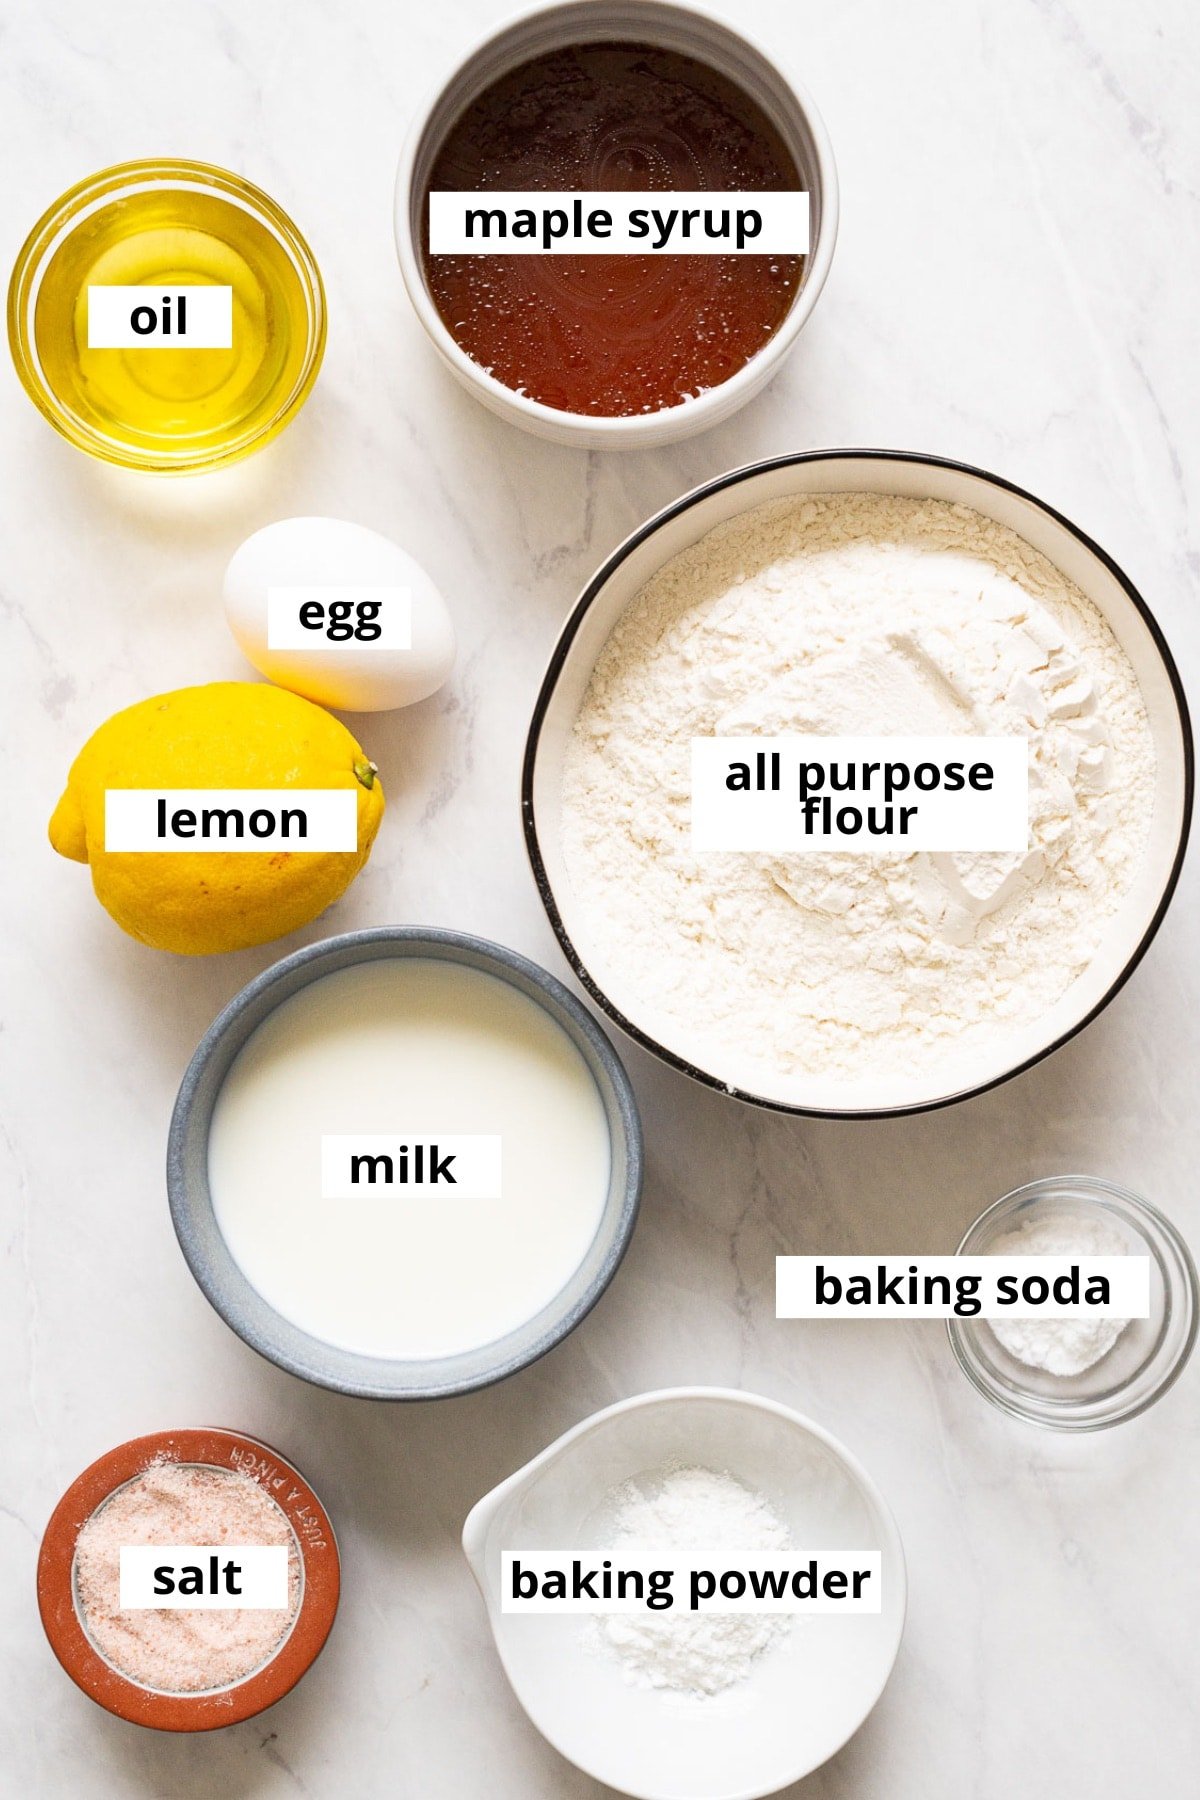 Maple syrup, oil, egg, lemon, flour, milk, salt, baking soda, baking powder.